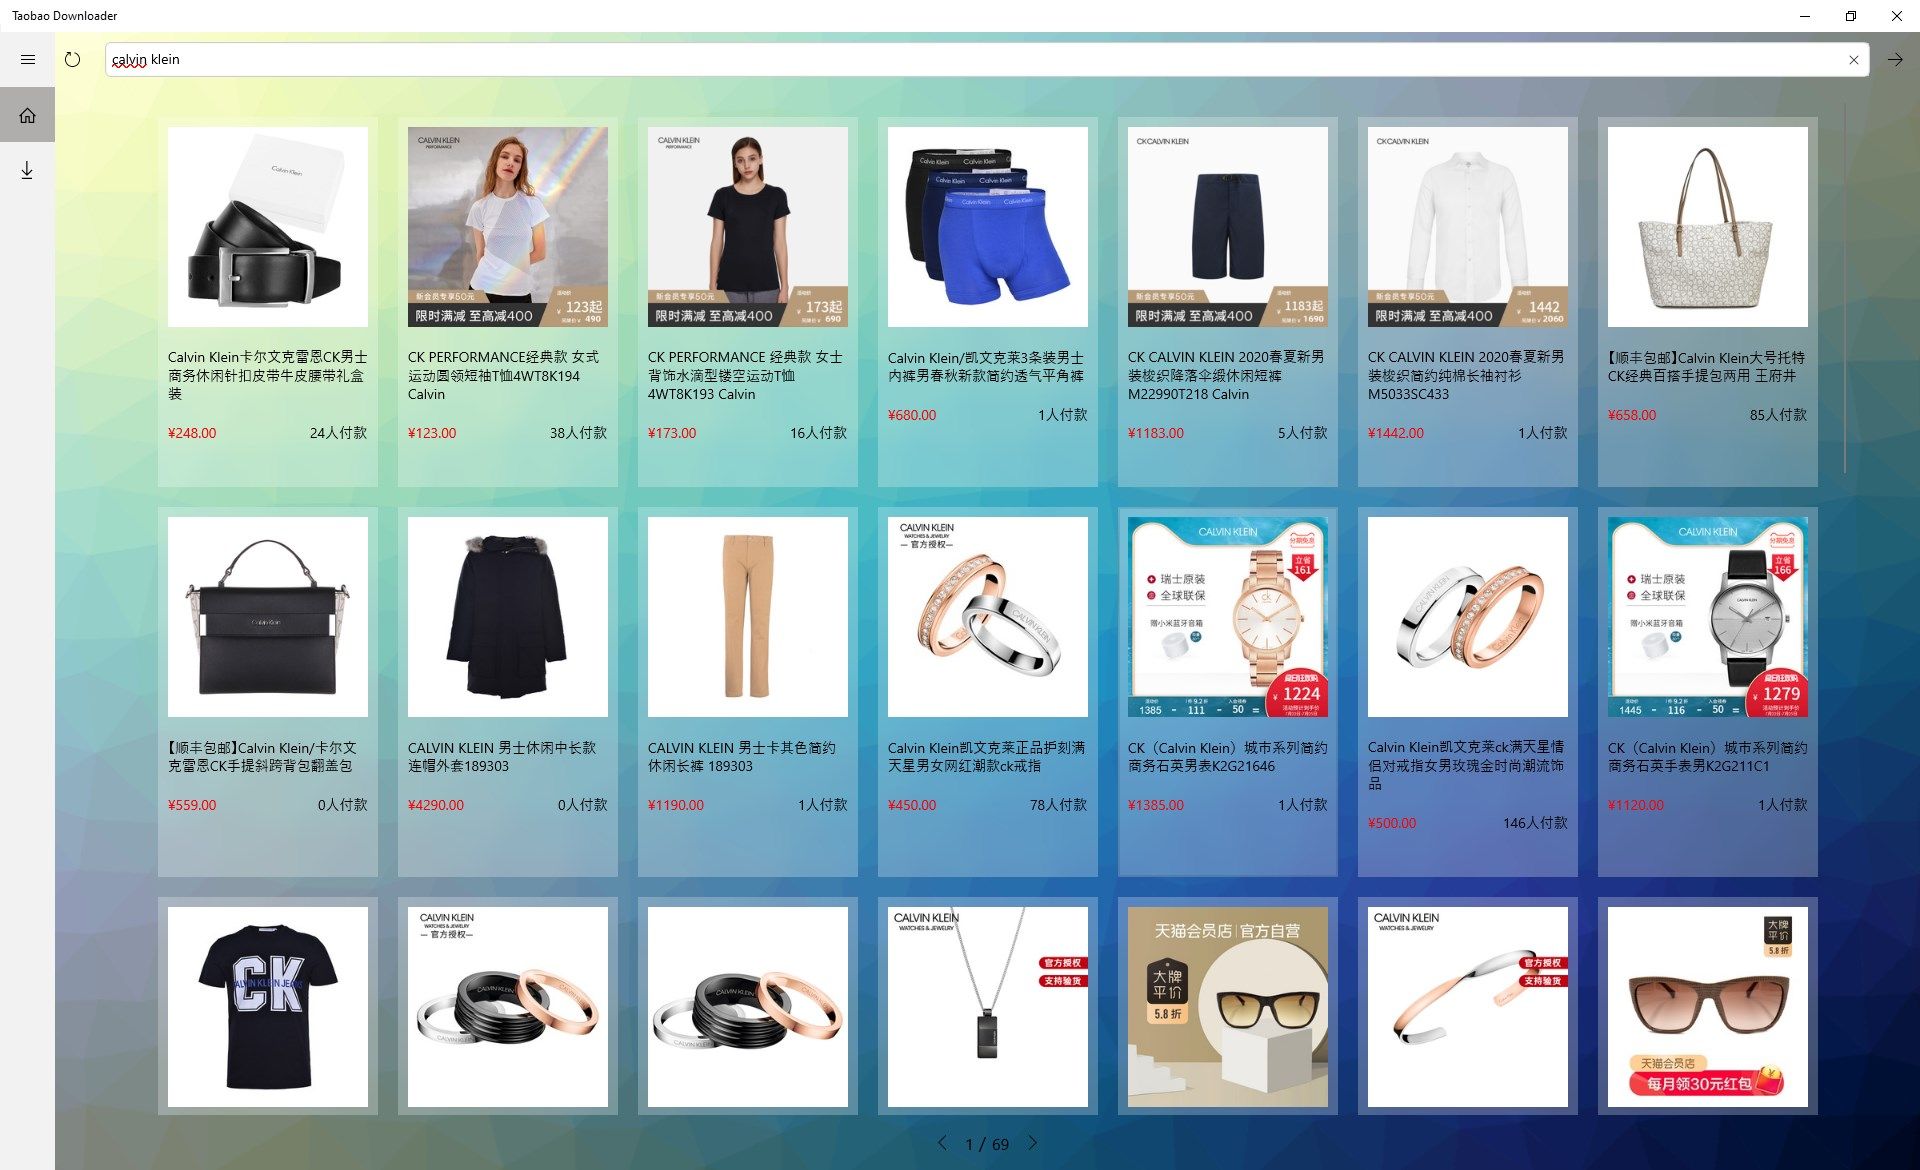 Taobao Downloader